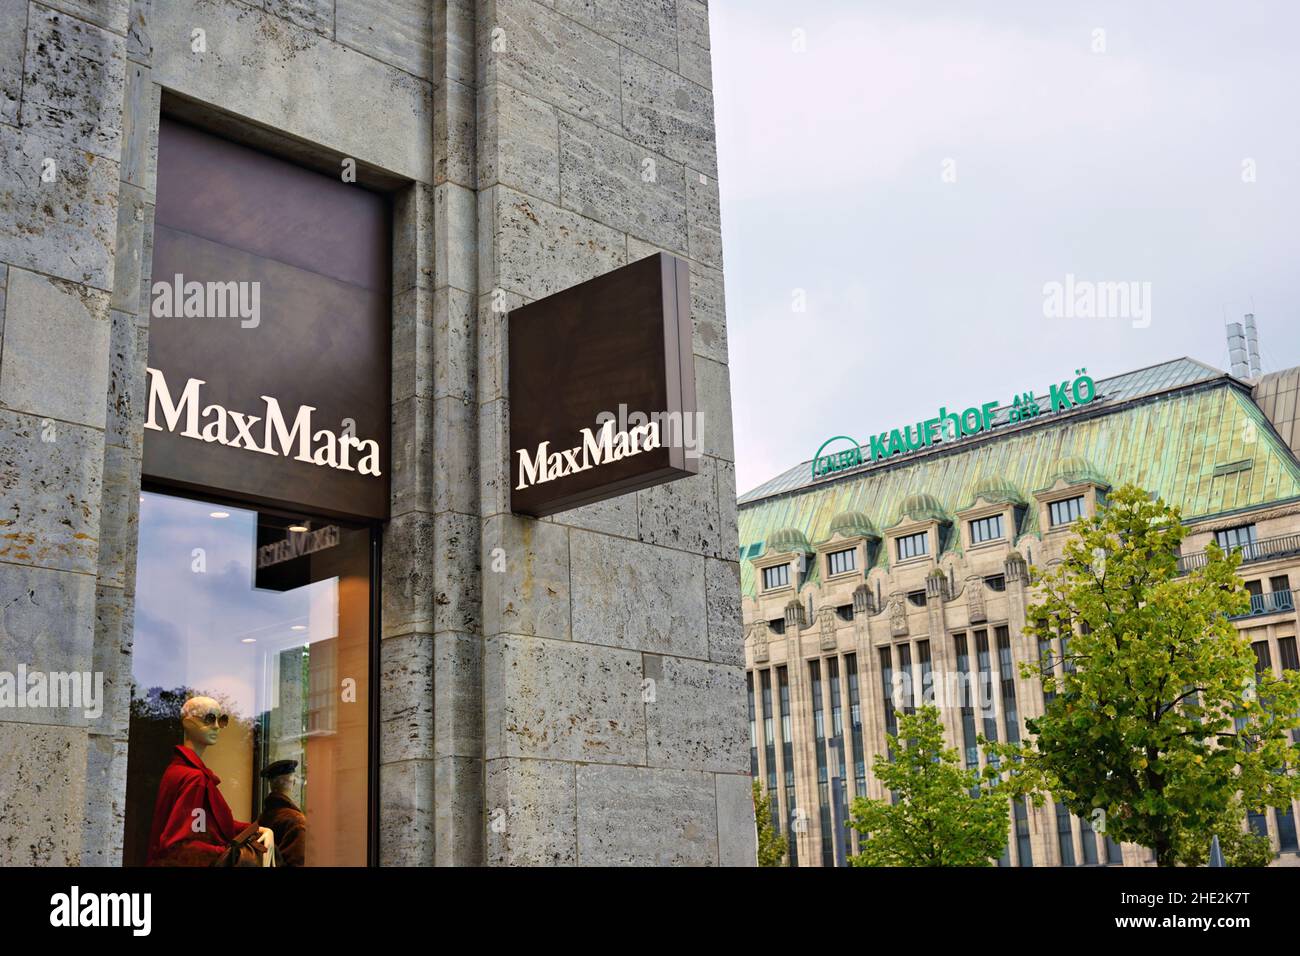 Quartier commerçant de Düsseldorf/Allemagne, Königsallee, avec un magasin Max Mara moderne et un grand magasin historique Kaufhof. Banque D'Images